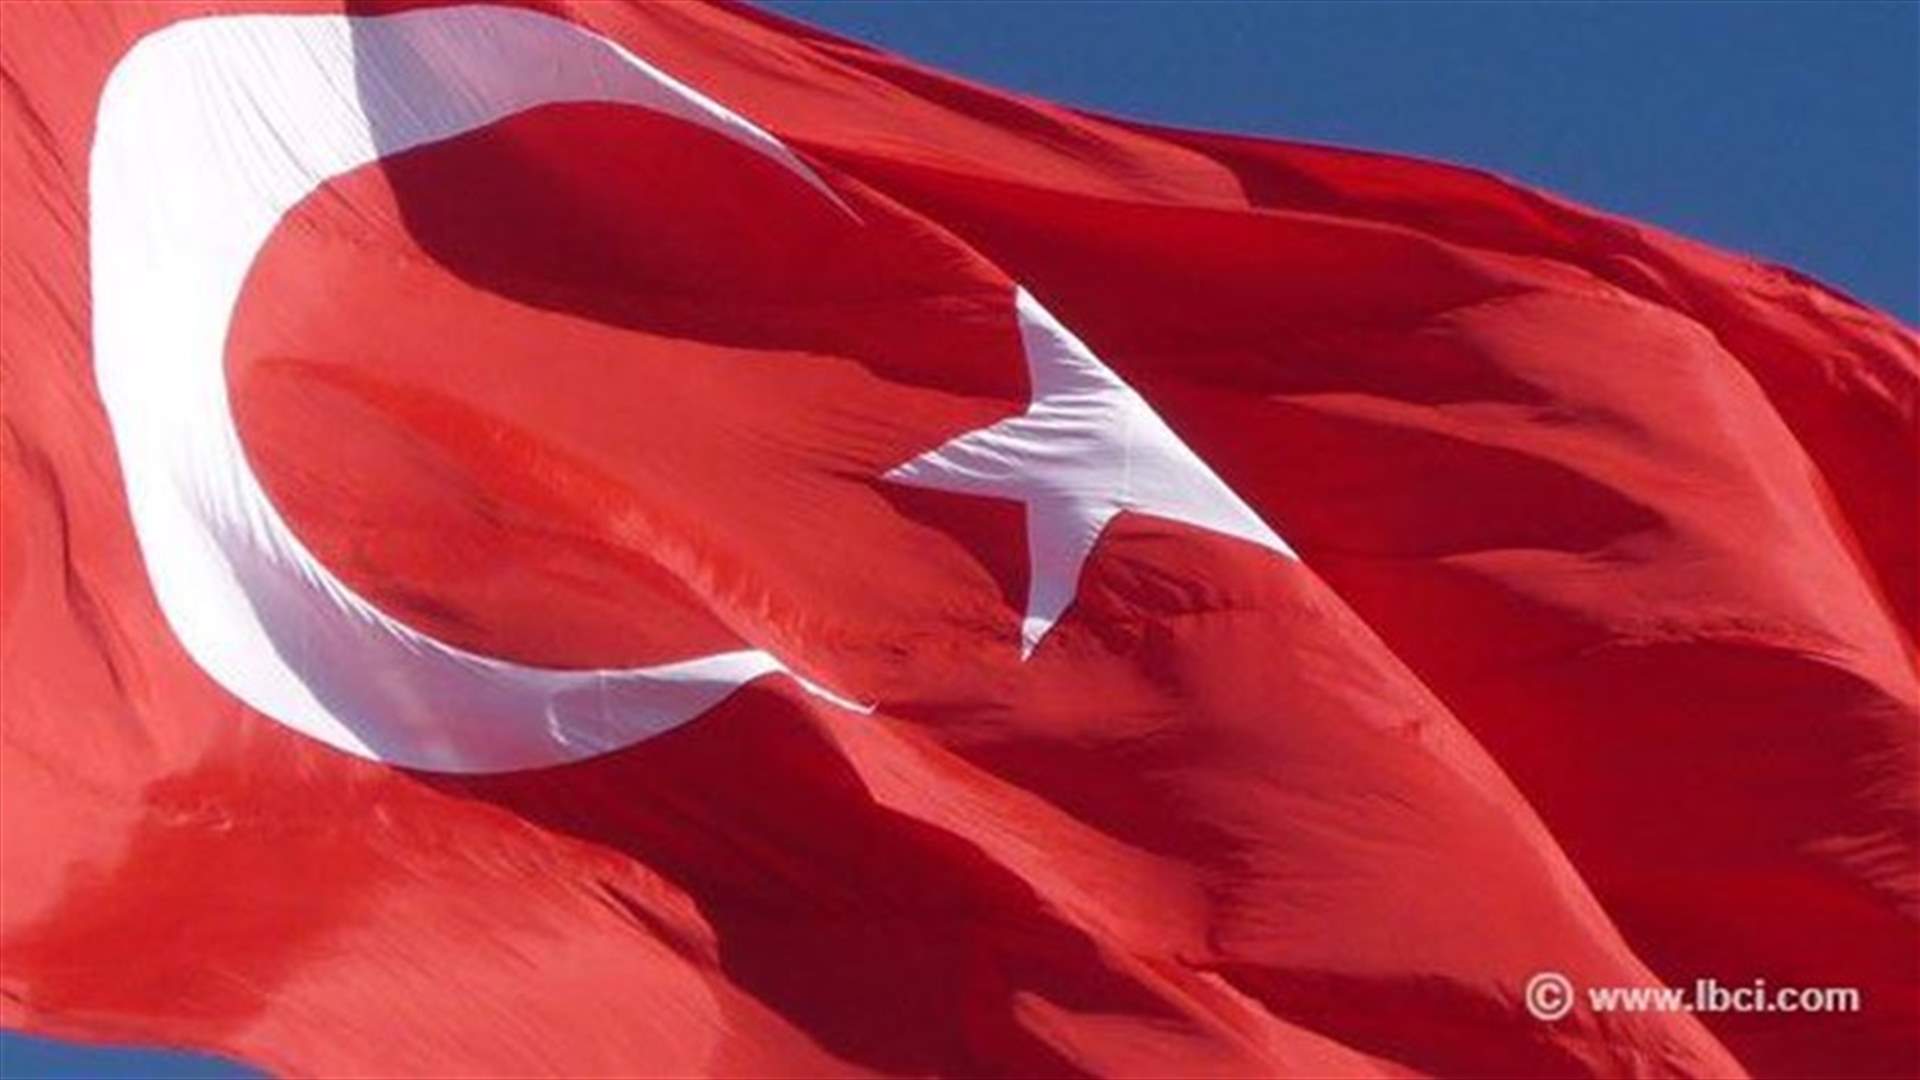 الشرطة التركية تقتل شخصين احتجزا قاضيًا توفي لاحقًا اثر اصابته في الهجوم 